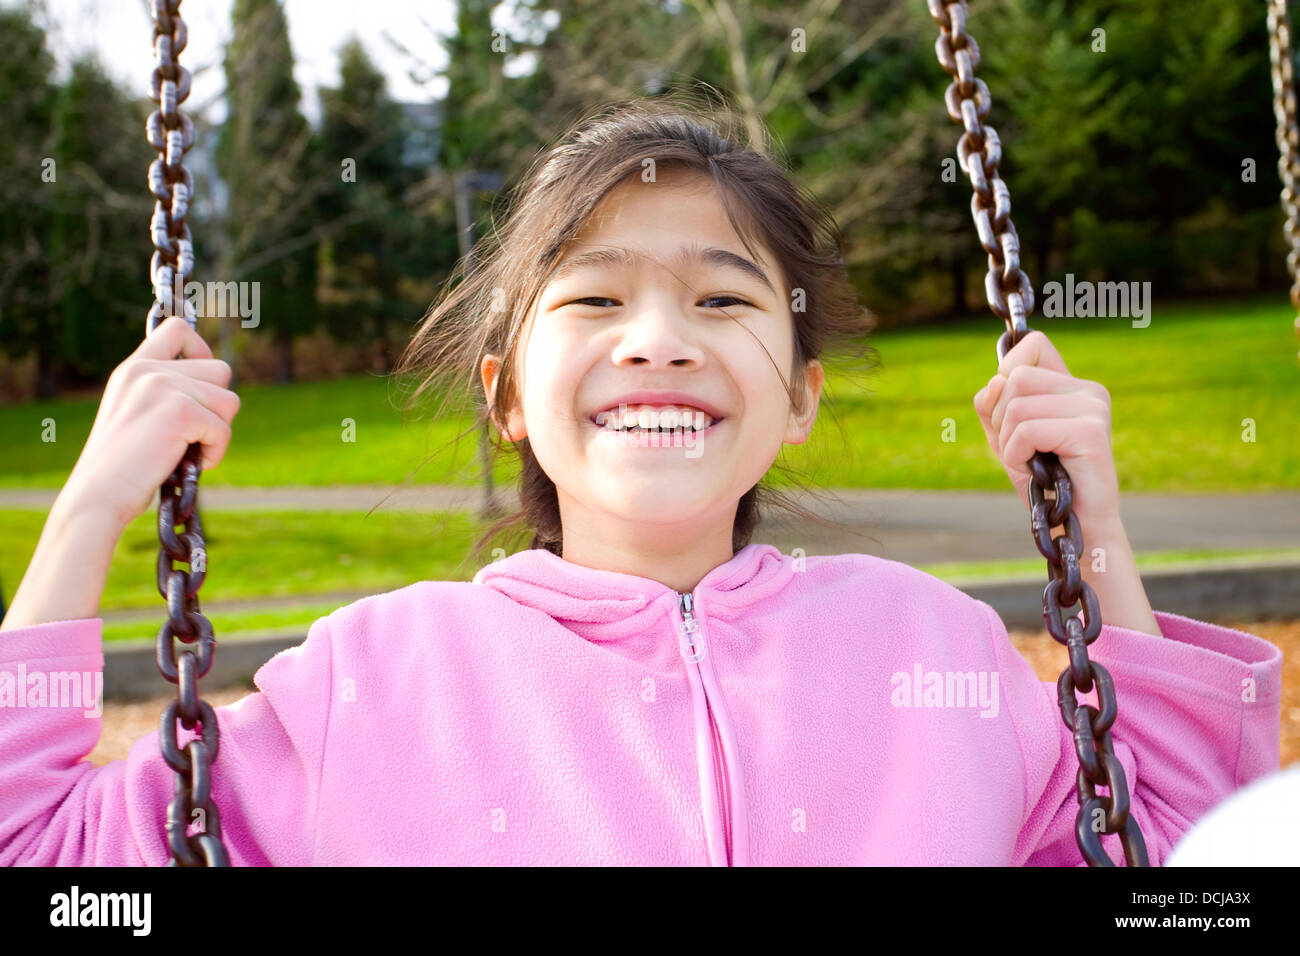 Glückliche kleine Mädchen lächelnd auf einer Schaukel im park Stockfoto